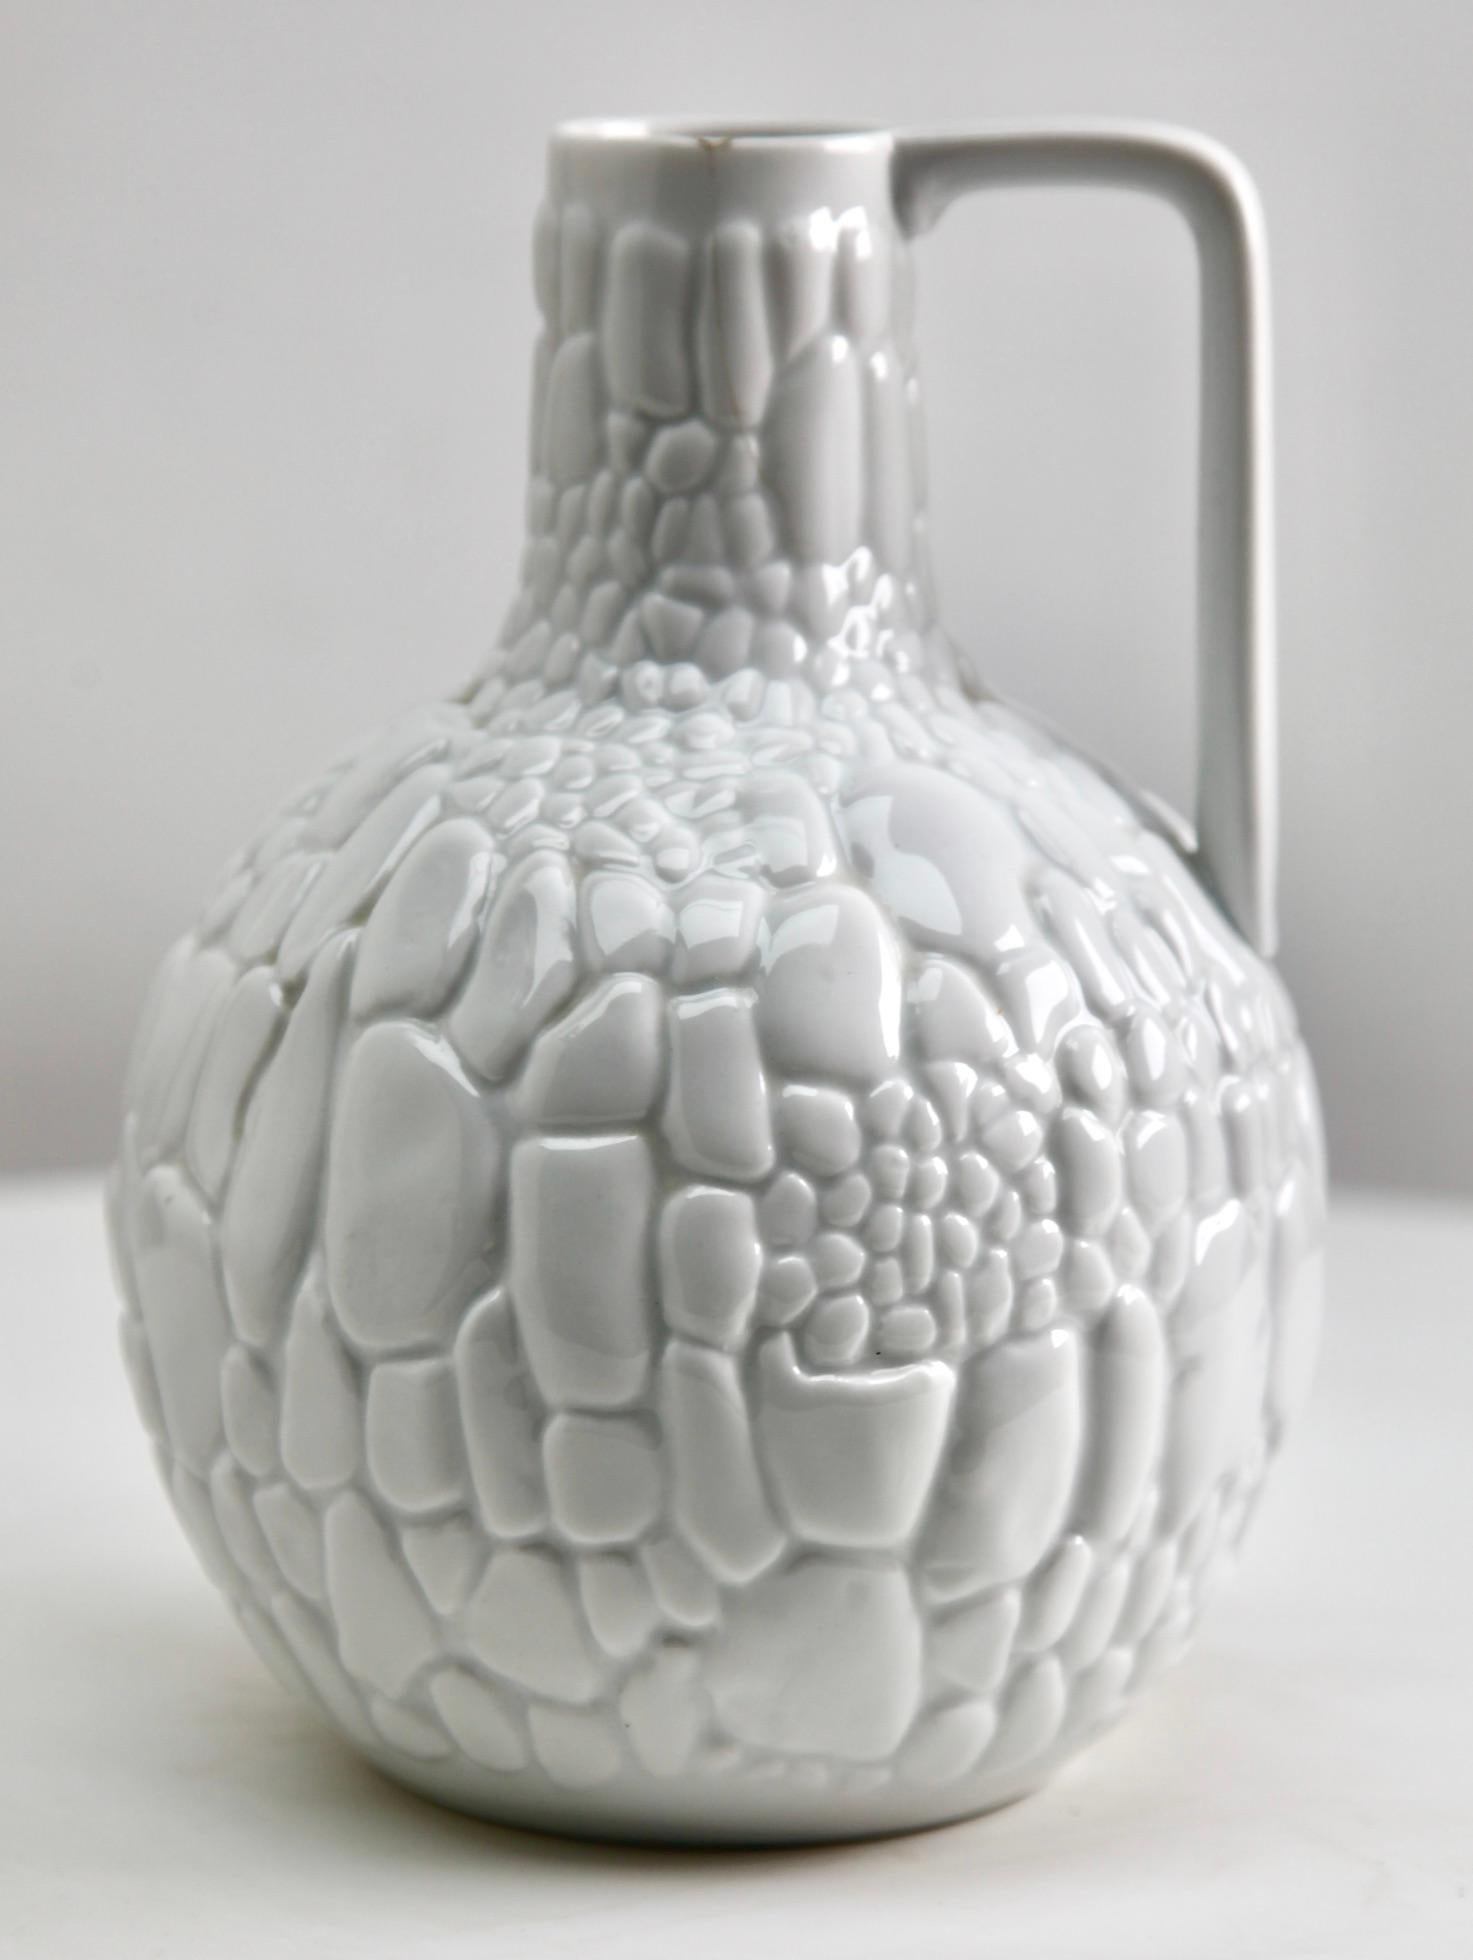 Kaiser Keramic Vase mit Henkel Deutschland' 1960er Jahre
Keramisch glasiert
Auf dem Sockel gestempelt. Kaiser
Maße: 19,5 cm x 14 cm

Das Stück ist eine echte Schönheit.

 

Mit besten Wünschen 
Geert Niessen
 

  
   
    

     